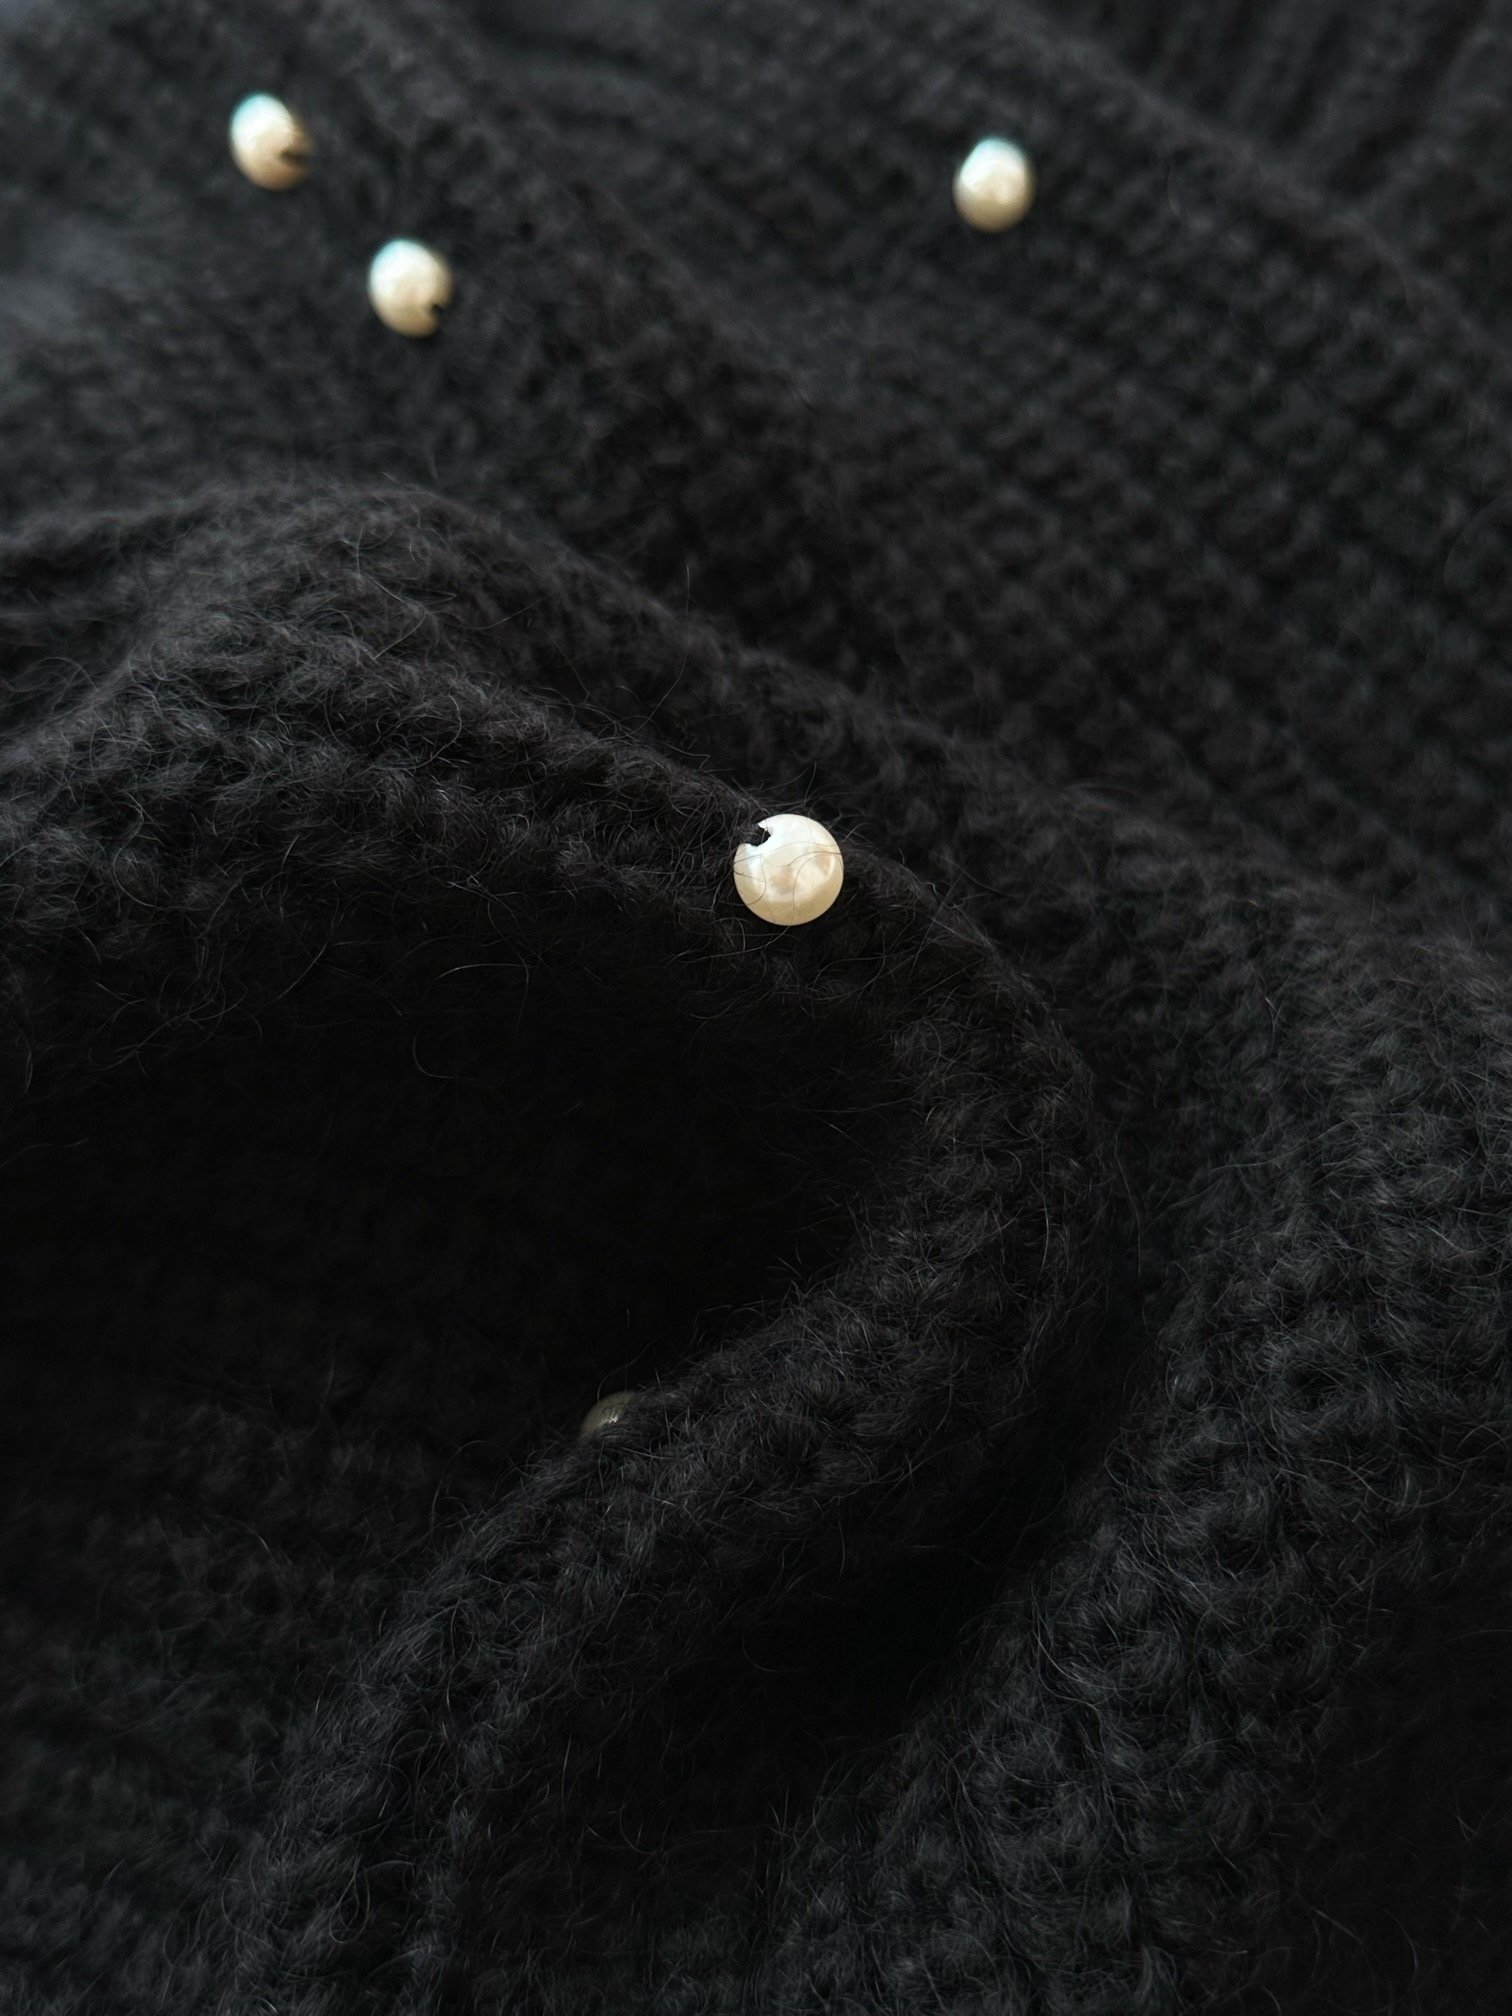 /新款圆领针织毛衫选用高比例马海毛纱线柔软的纤维特性蓬松厚实3针1*1珠地一粒粒紧凑排列稍显凹凸的肌理感